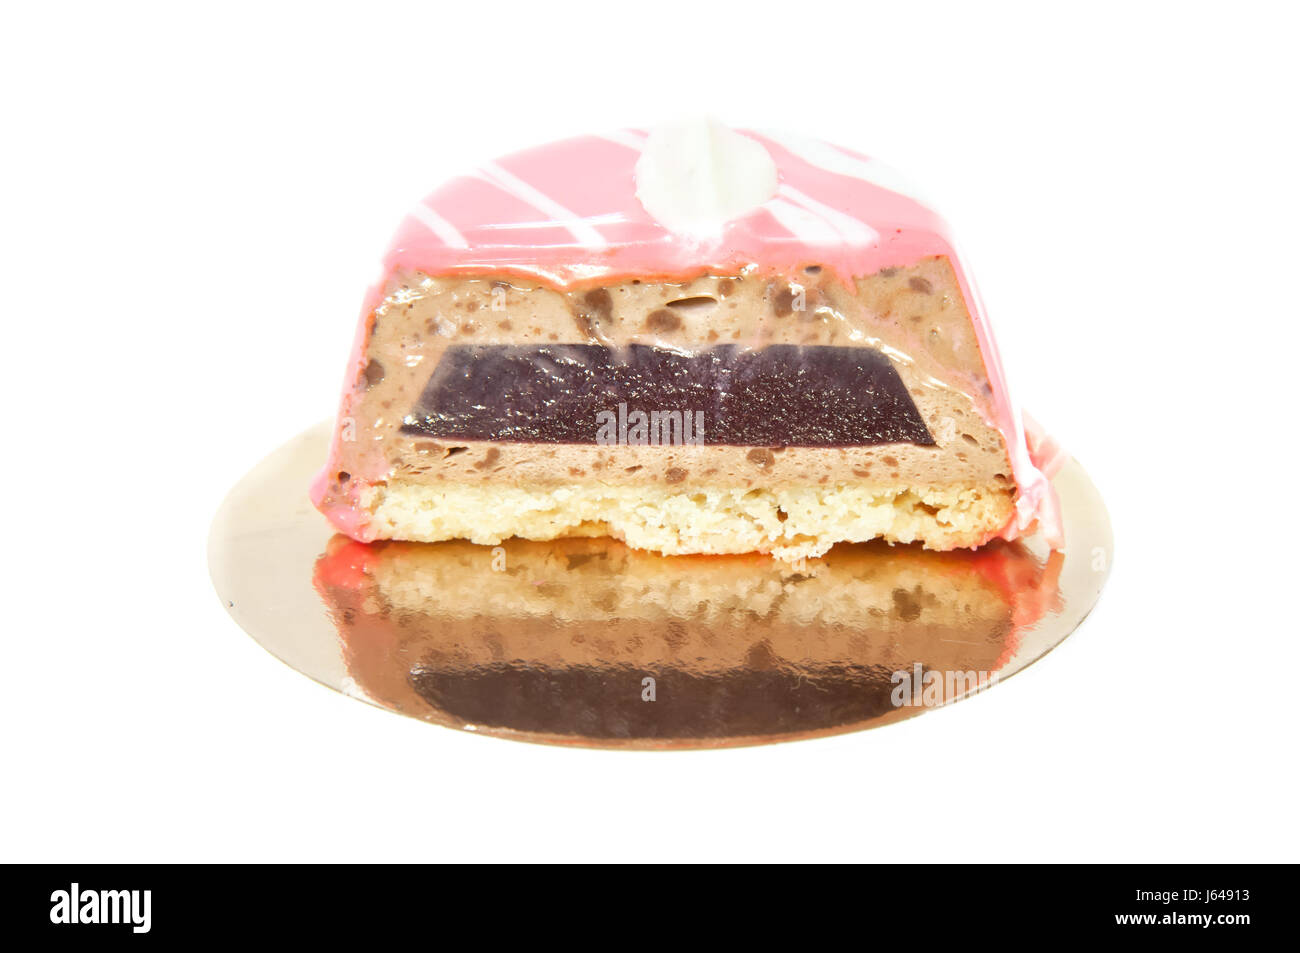 Mousse francese torta ricoperta con smalto ciliegia isolato su bianco Foto Stock